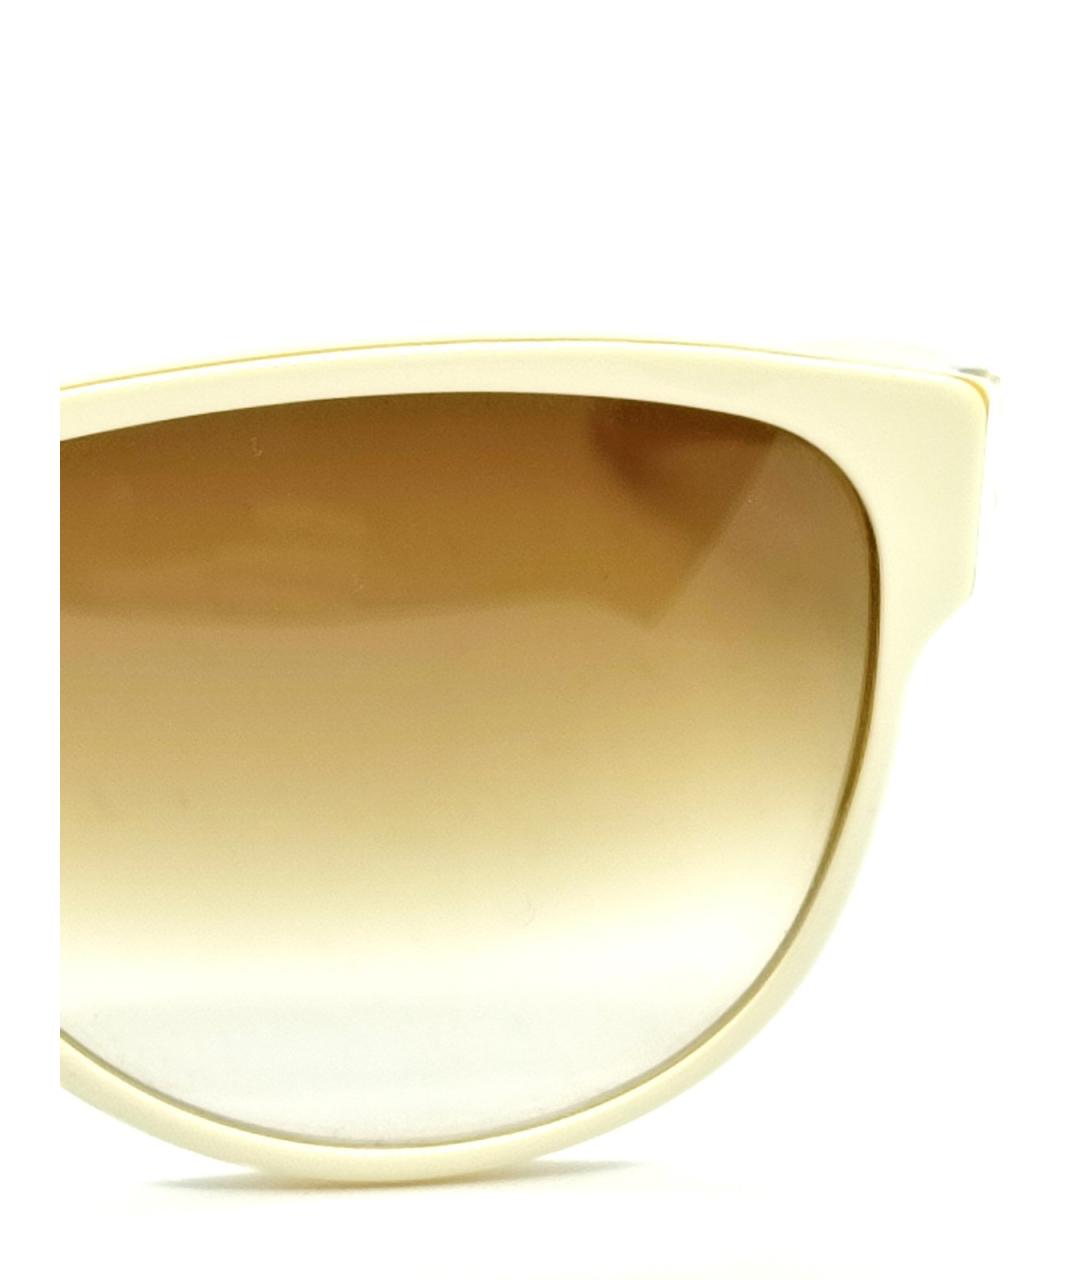 ICBERLIN Белые пластиковые солнцезащитные очки, фото 3